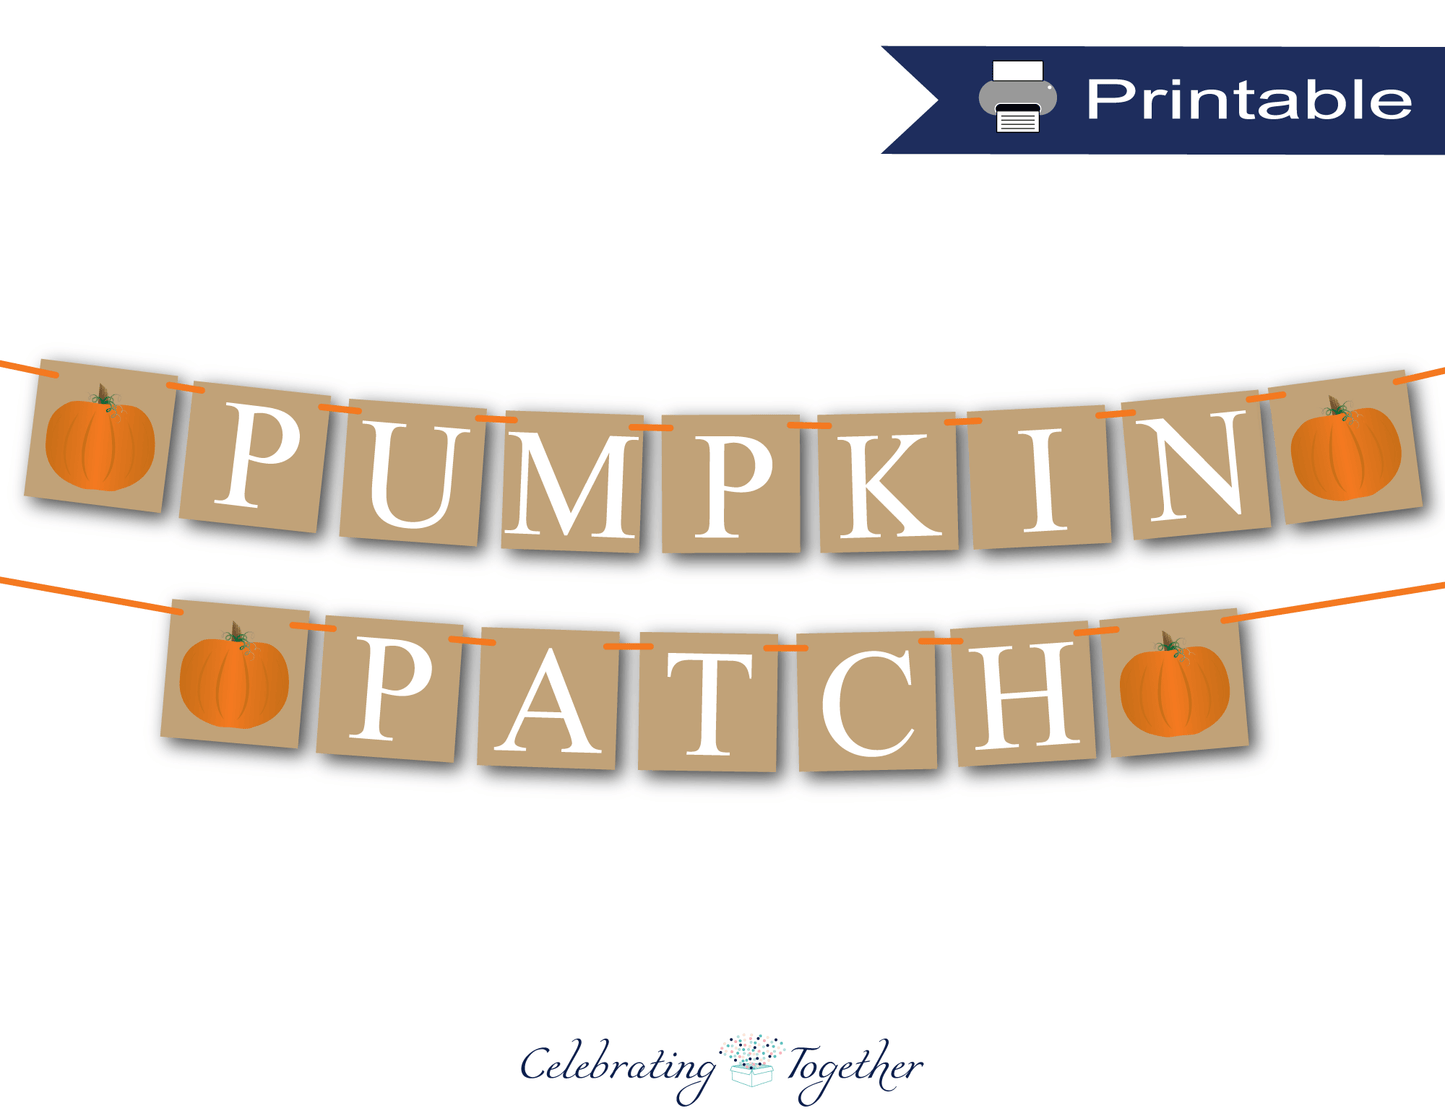 Printable pumpkin patch banner - Celebrating Together